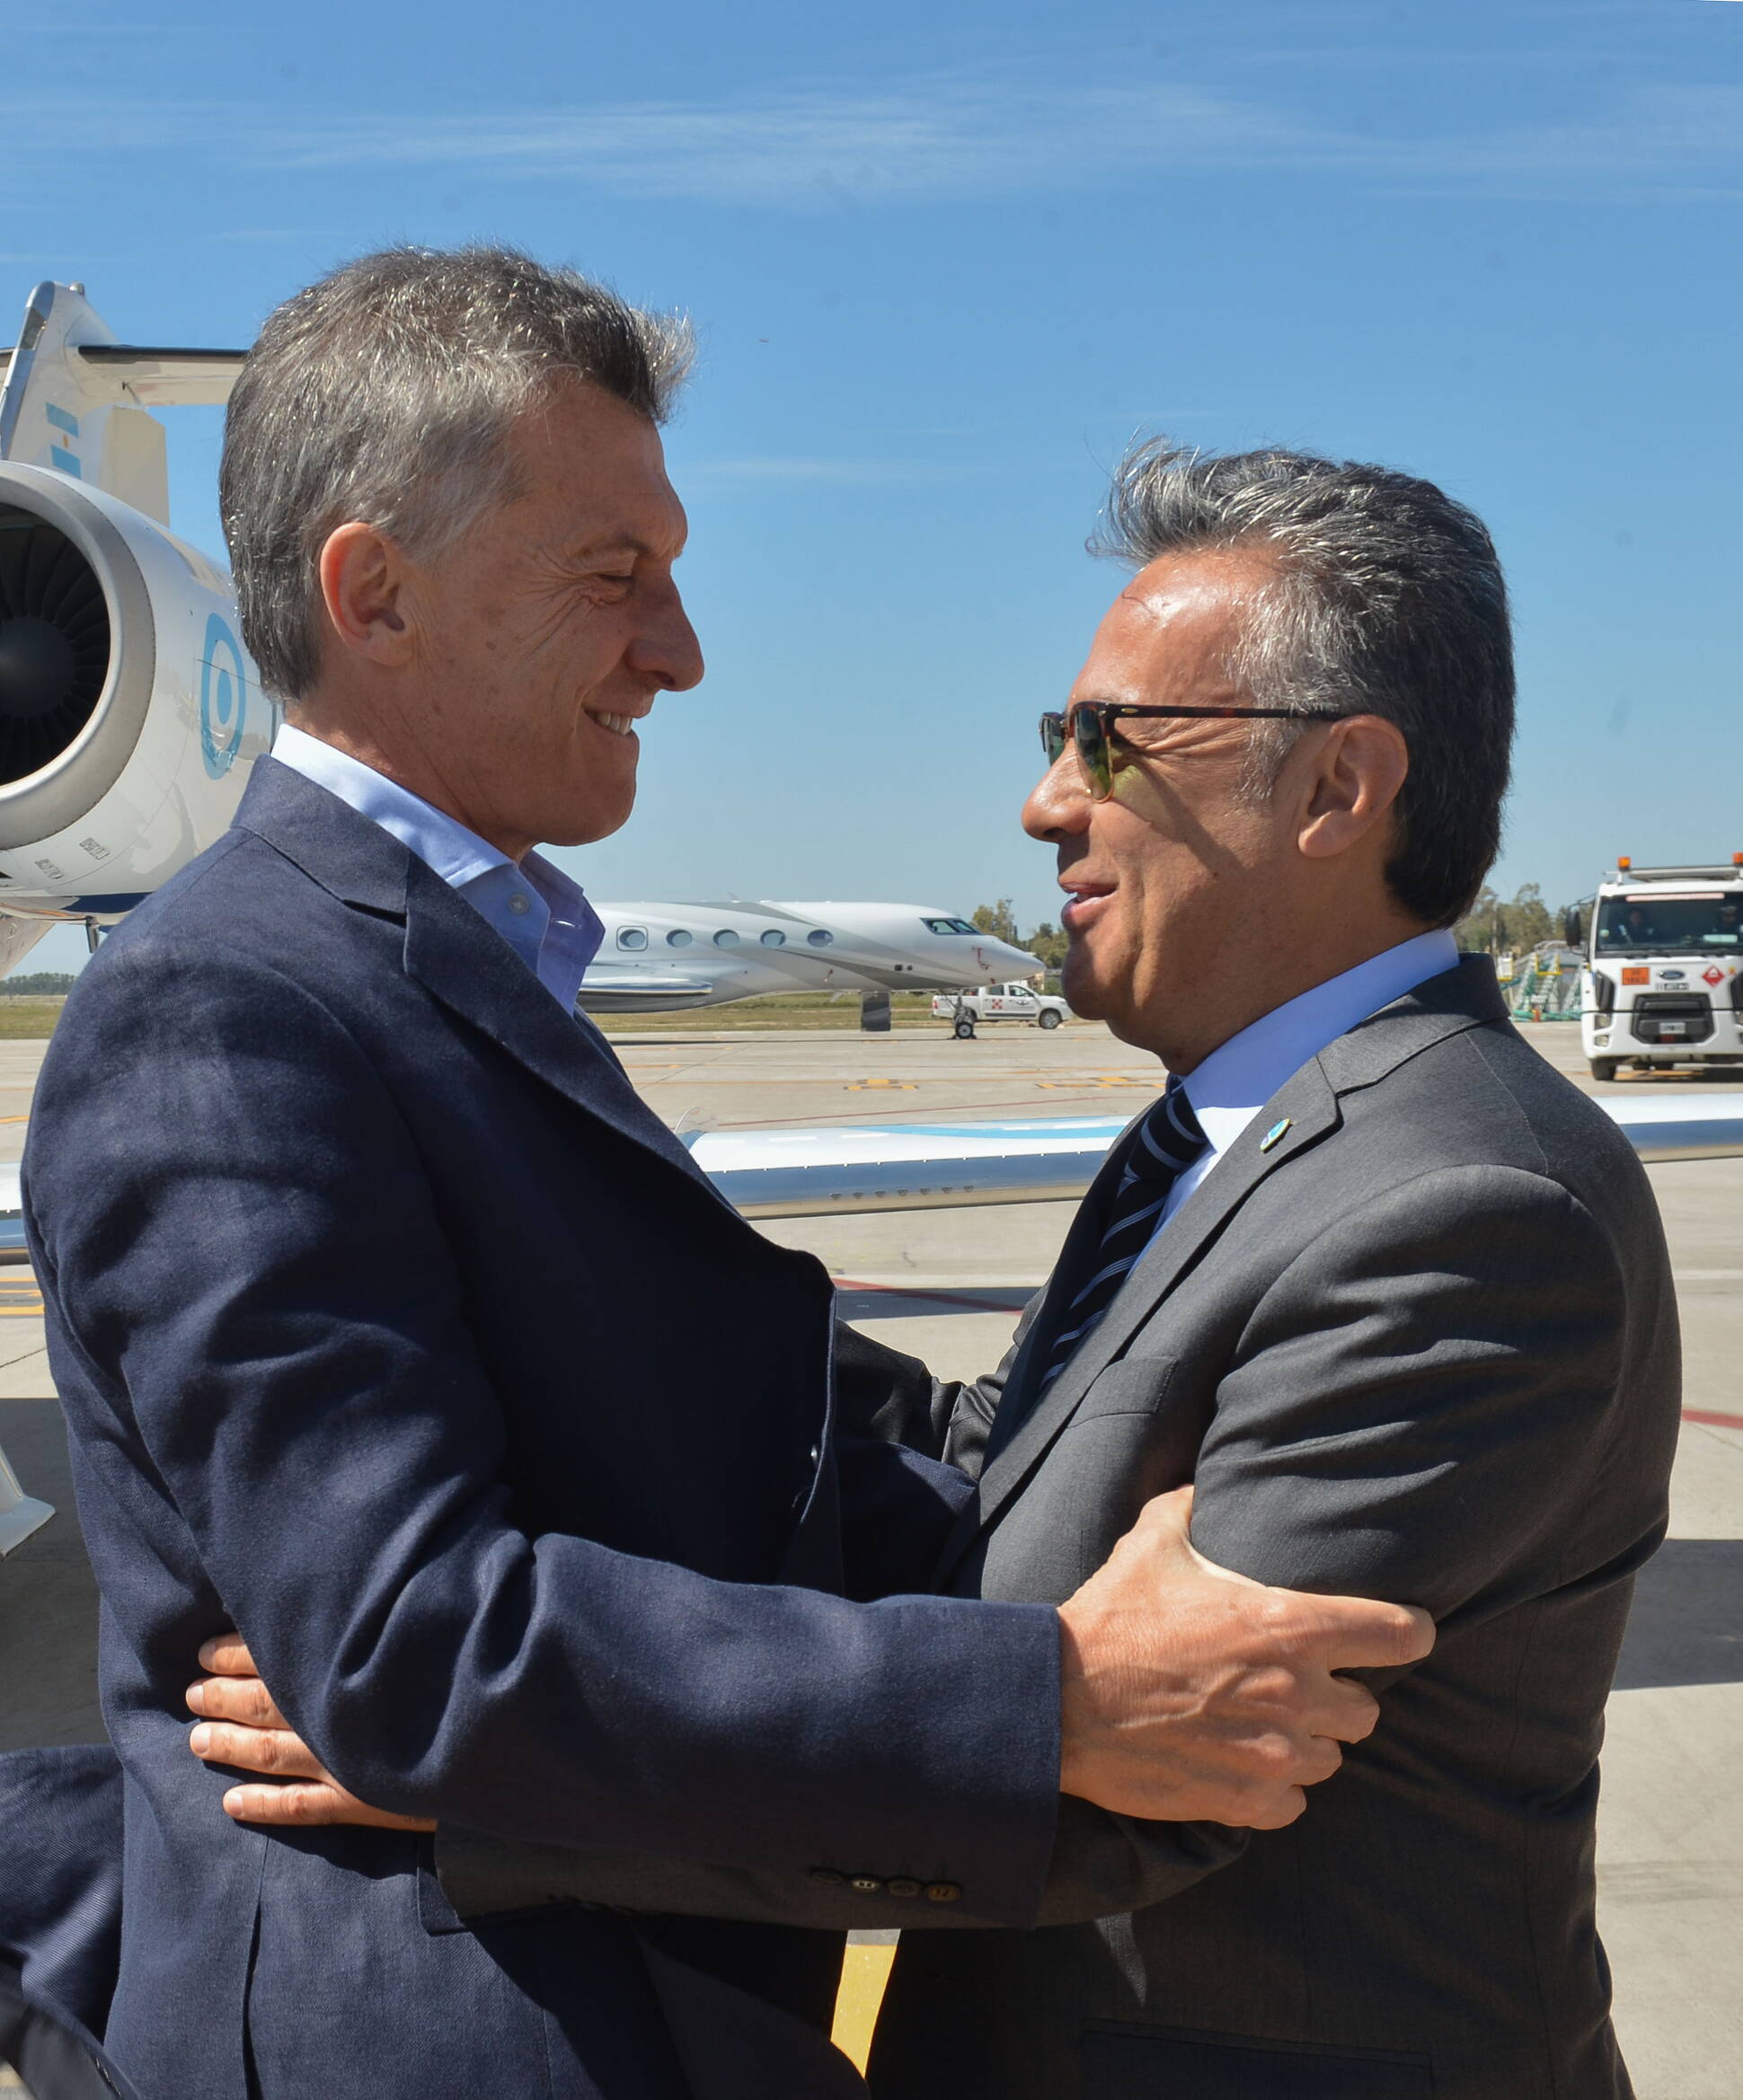 El presidente Macri encabezó la reinauguración del aeropuerto internacional de Mendoza